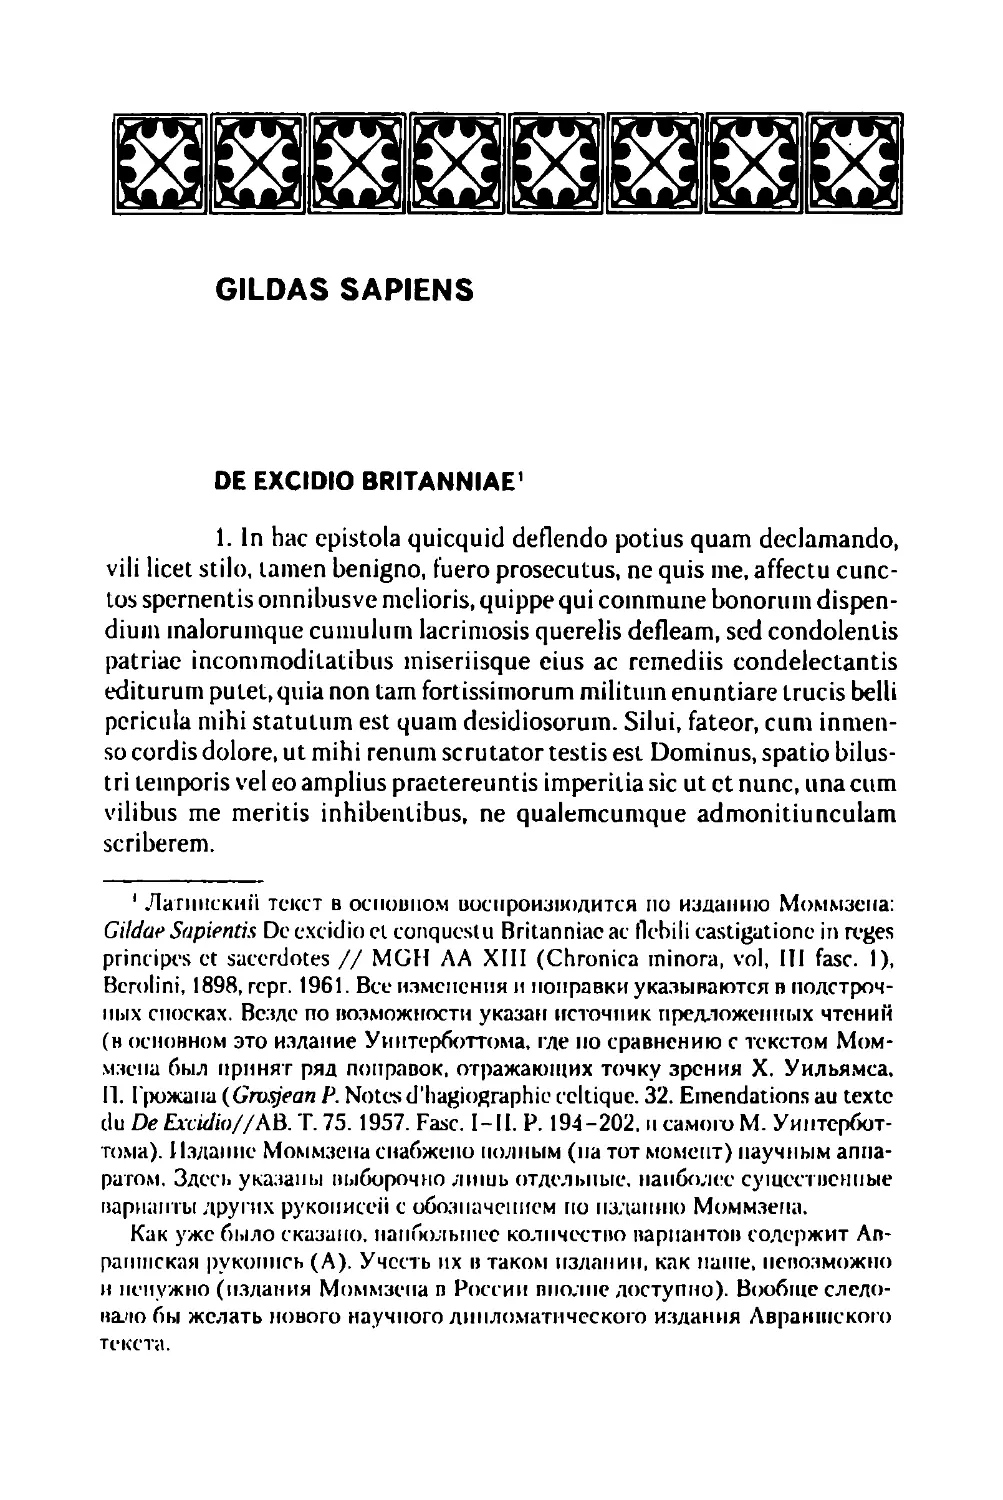 Gildas Sapiens De excidio Britanniae